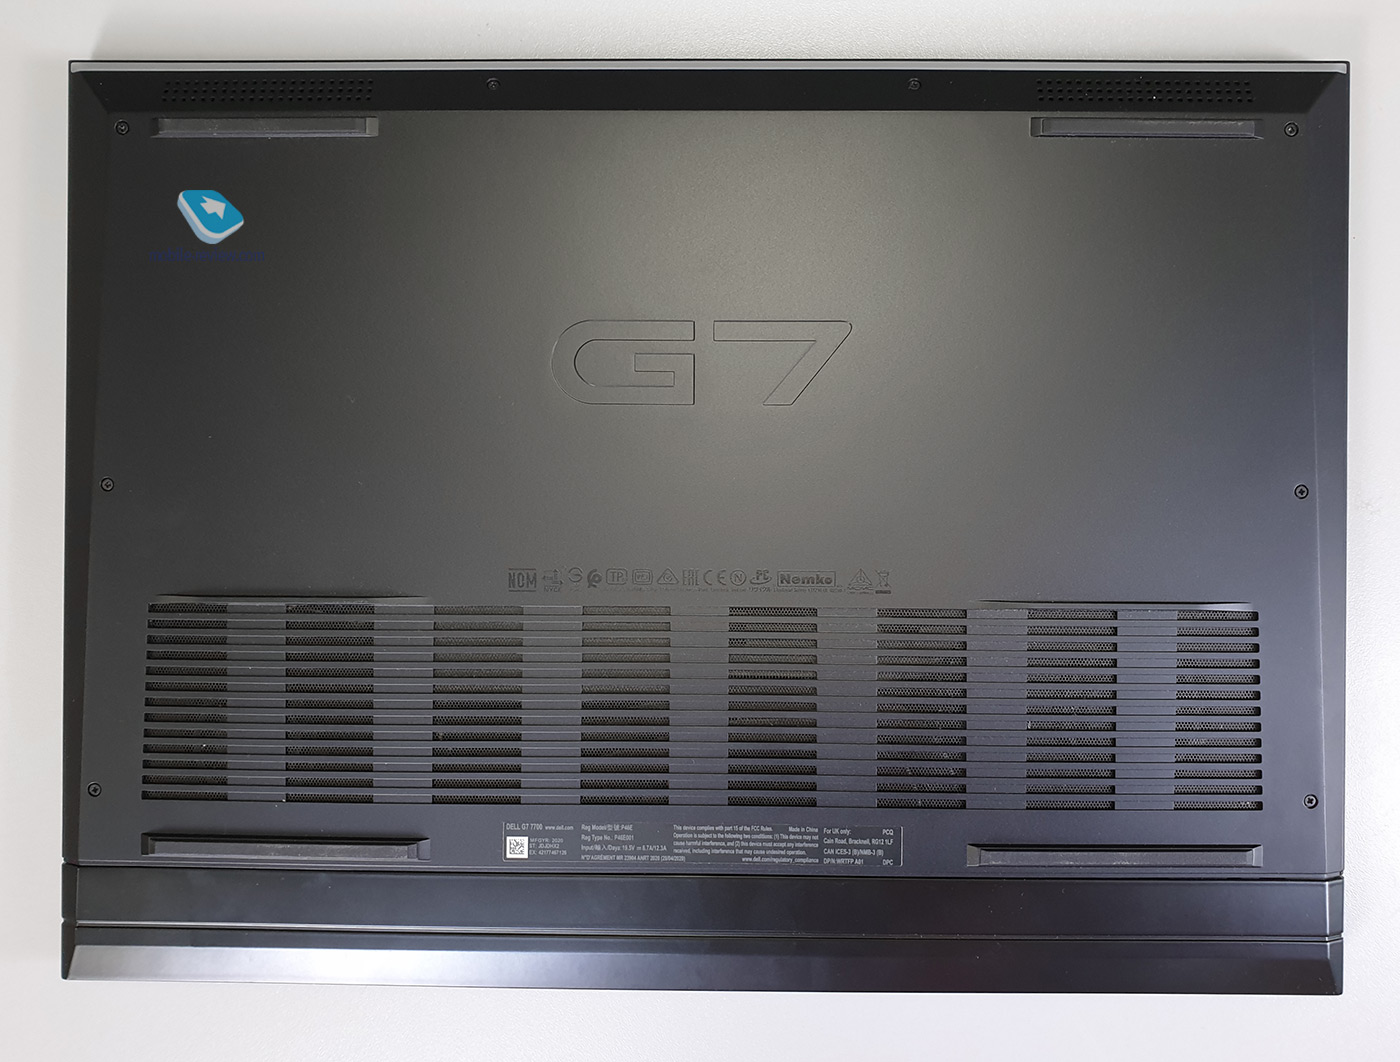  Dell G7 17:   